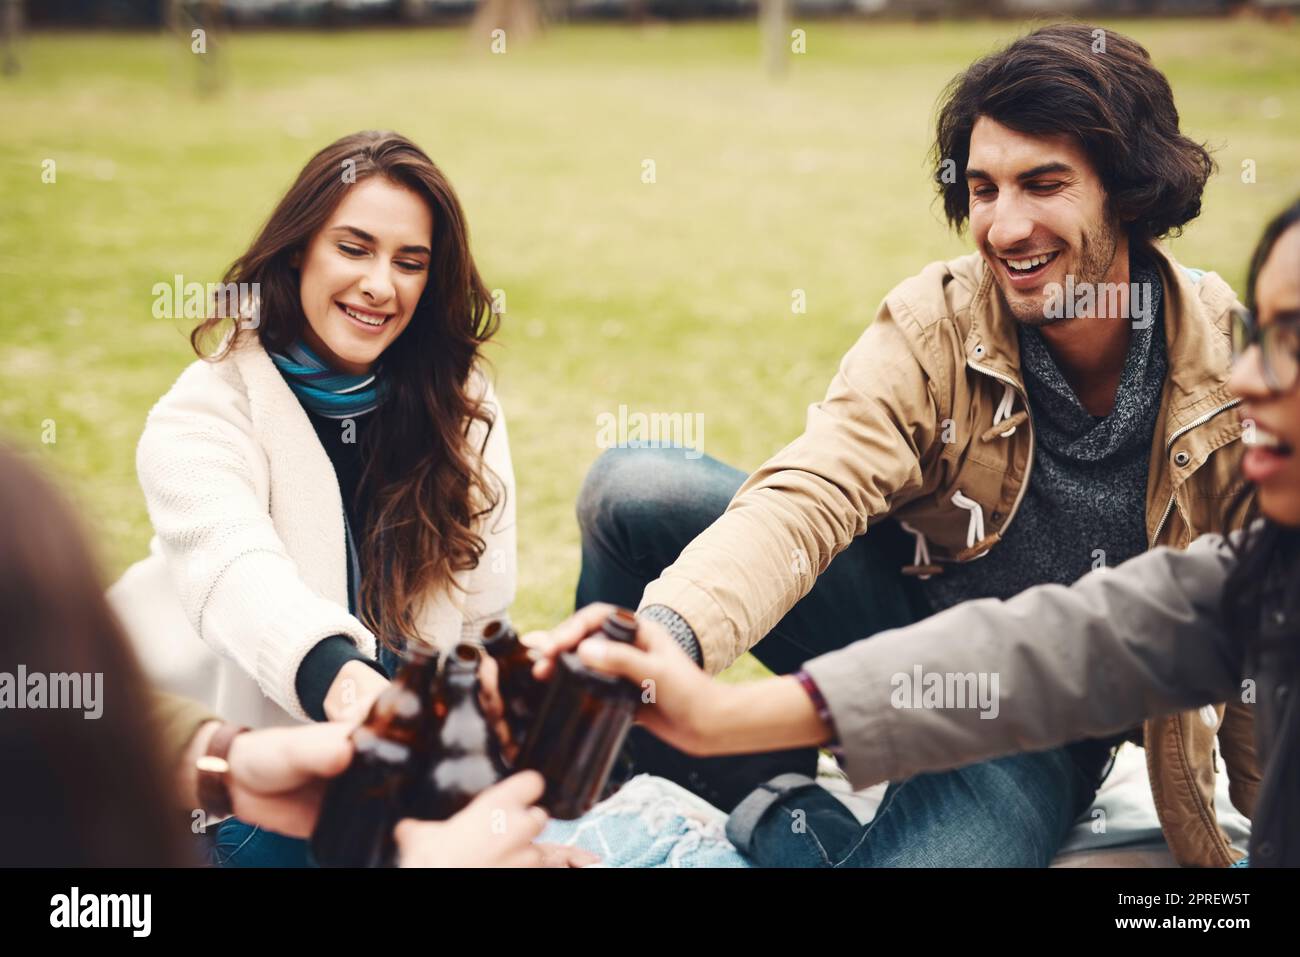 Heres a molti altri ricordi insieme. un gruppo di giovani amici allegri che fanno un picnic insieme mentre festeggiano con un brindisi all'aperto in un parco durante il giorno. Foto Stock